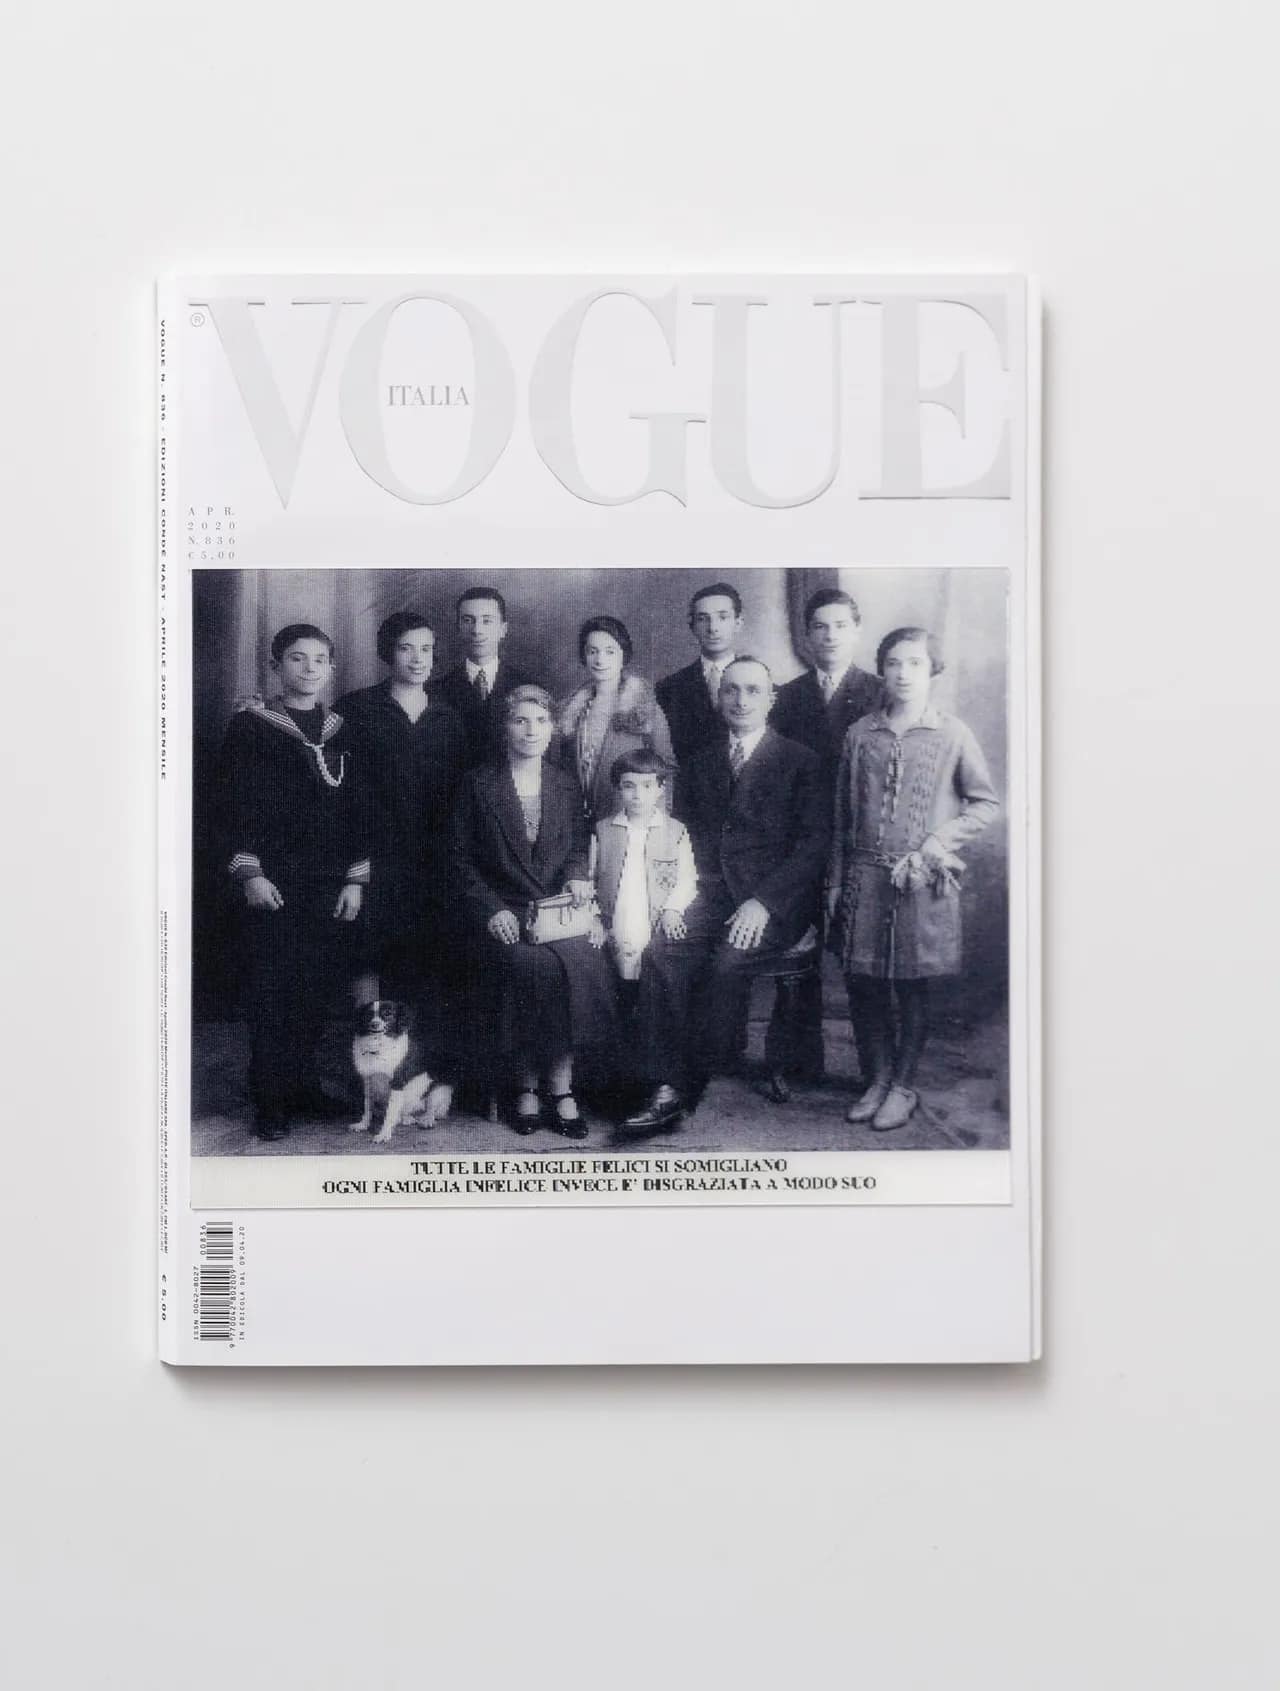 Tạp chí Vogue sau khi được khoác thêm áo mới. Các nghệ sĩ đã sử dụng trang bìa này như một khung trang và sáng tạo nên những tác phẩm mới nói về hi vọng, nỗi sợ hãi và những giấc mơ.